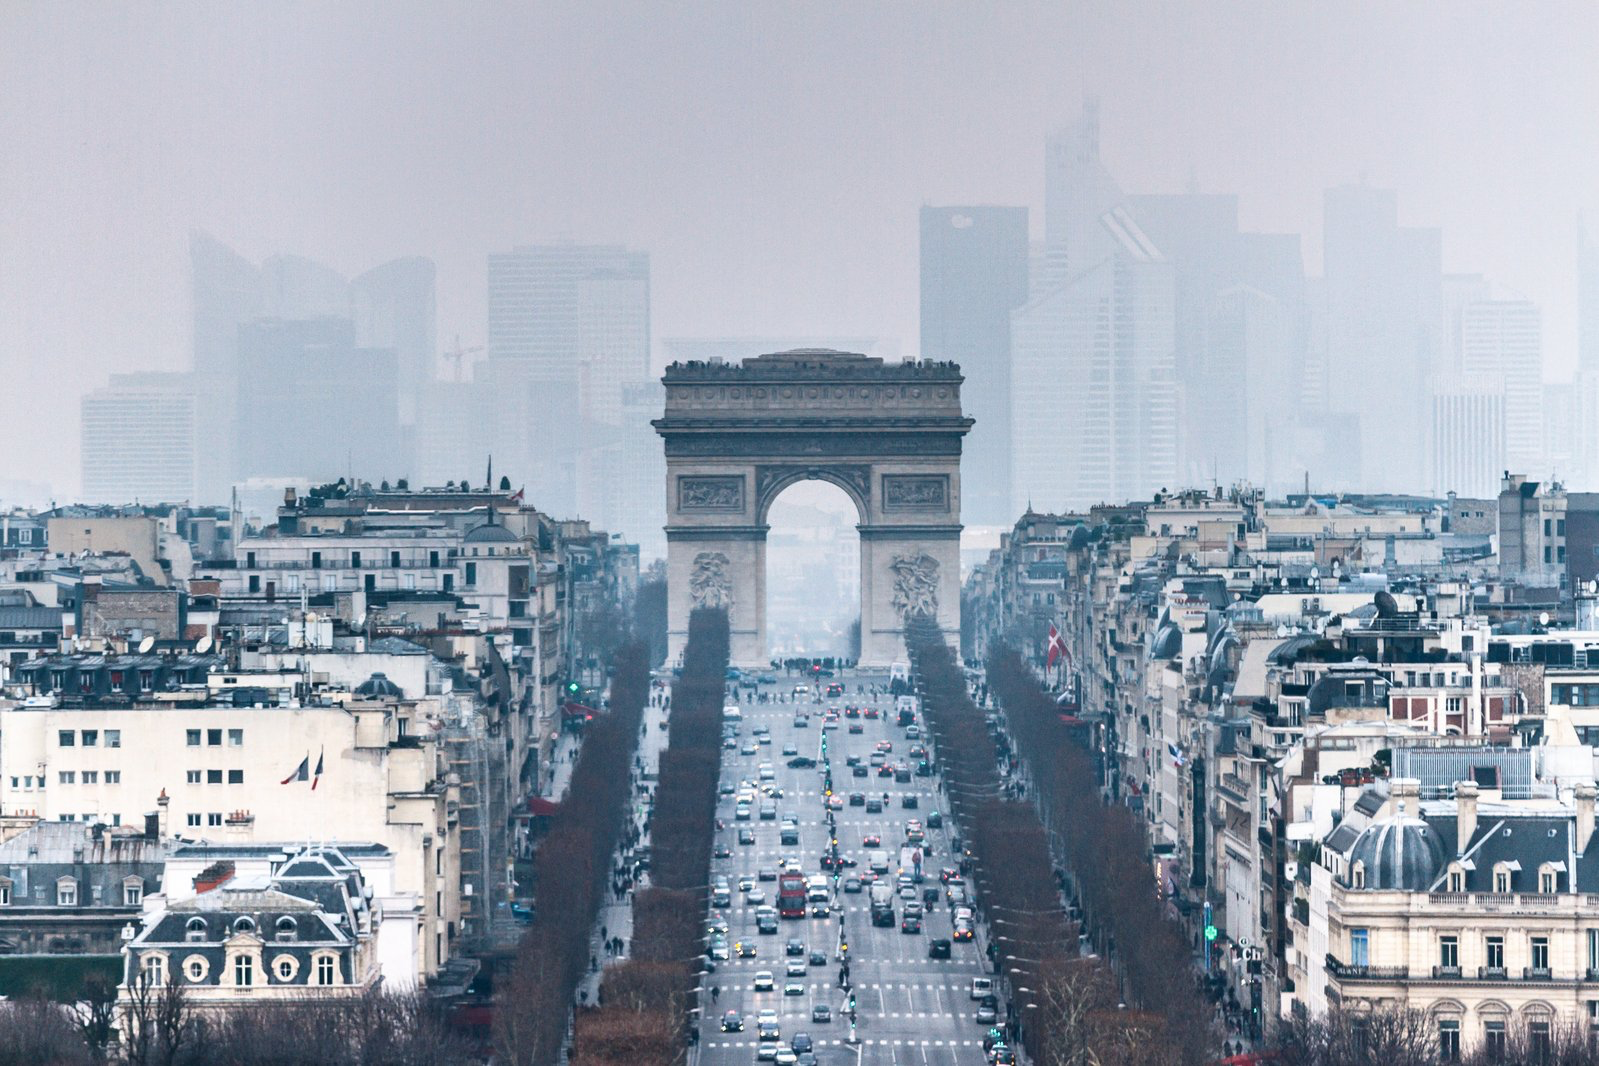 L'axe historique à Paris. Au premier plan, l'Arc de triomphe, en amont des Champs Elysées. En arrière plan, le centre d'affaire du quartier de la Défense.